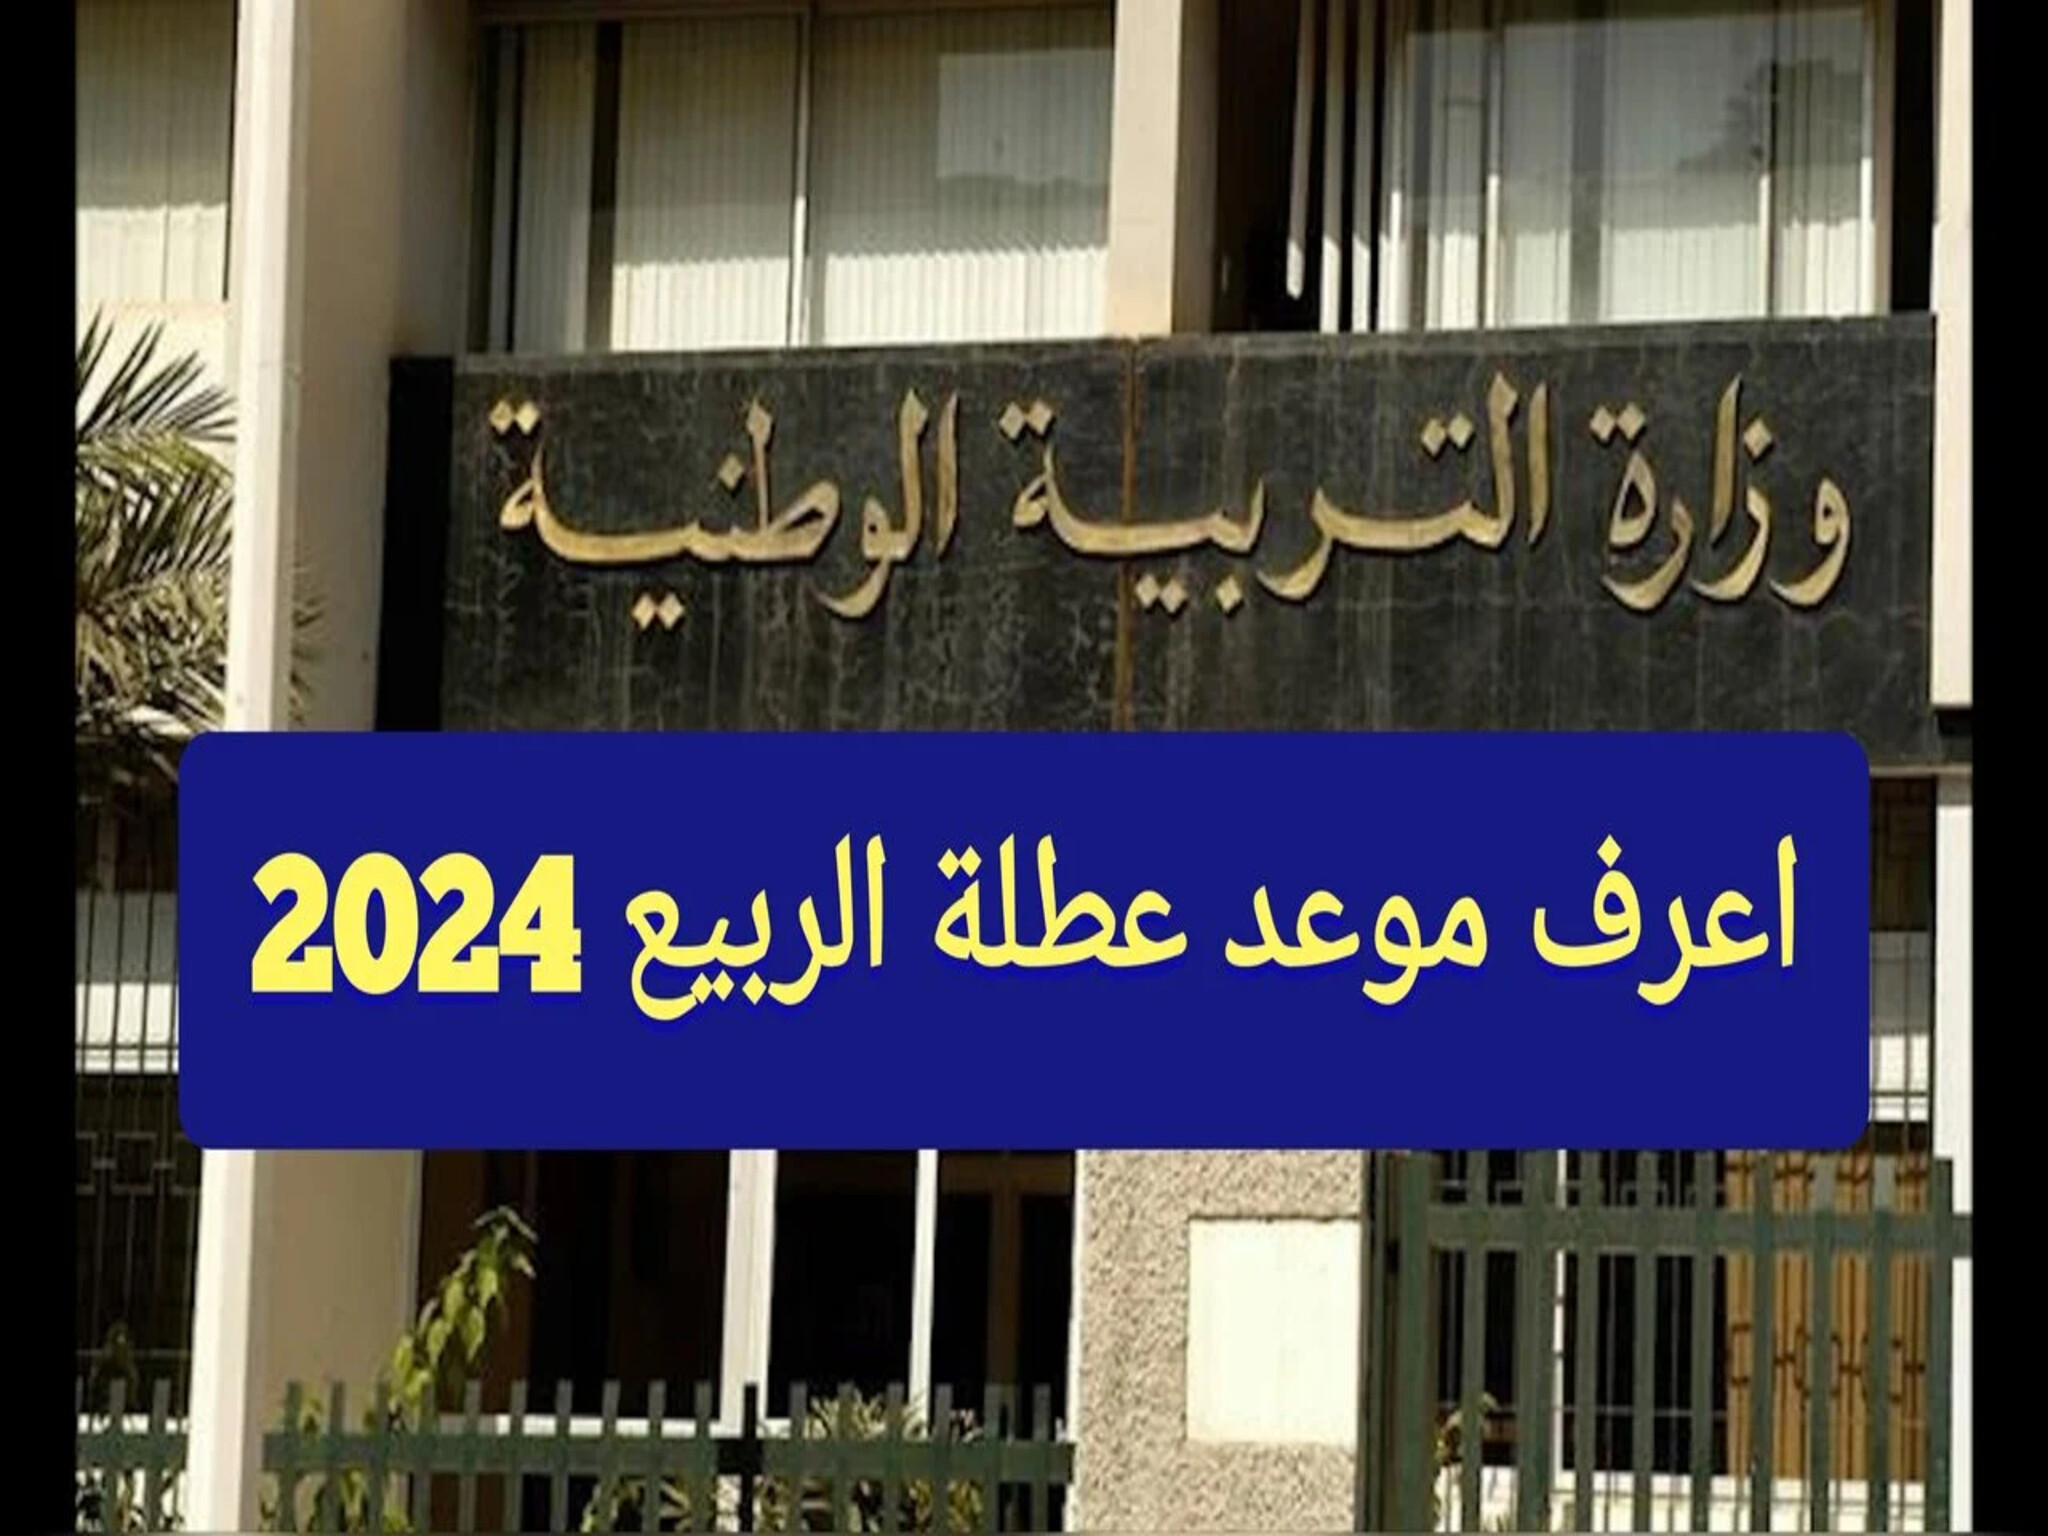 وزارة التربية والتعليم تنشر موعد أجازة عطلة الربيع 2024 في الجزائر  